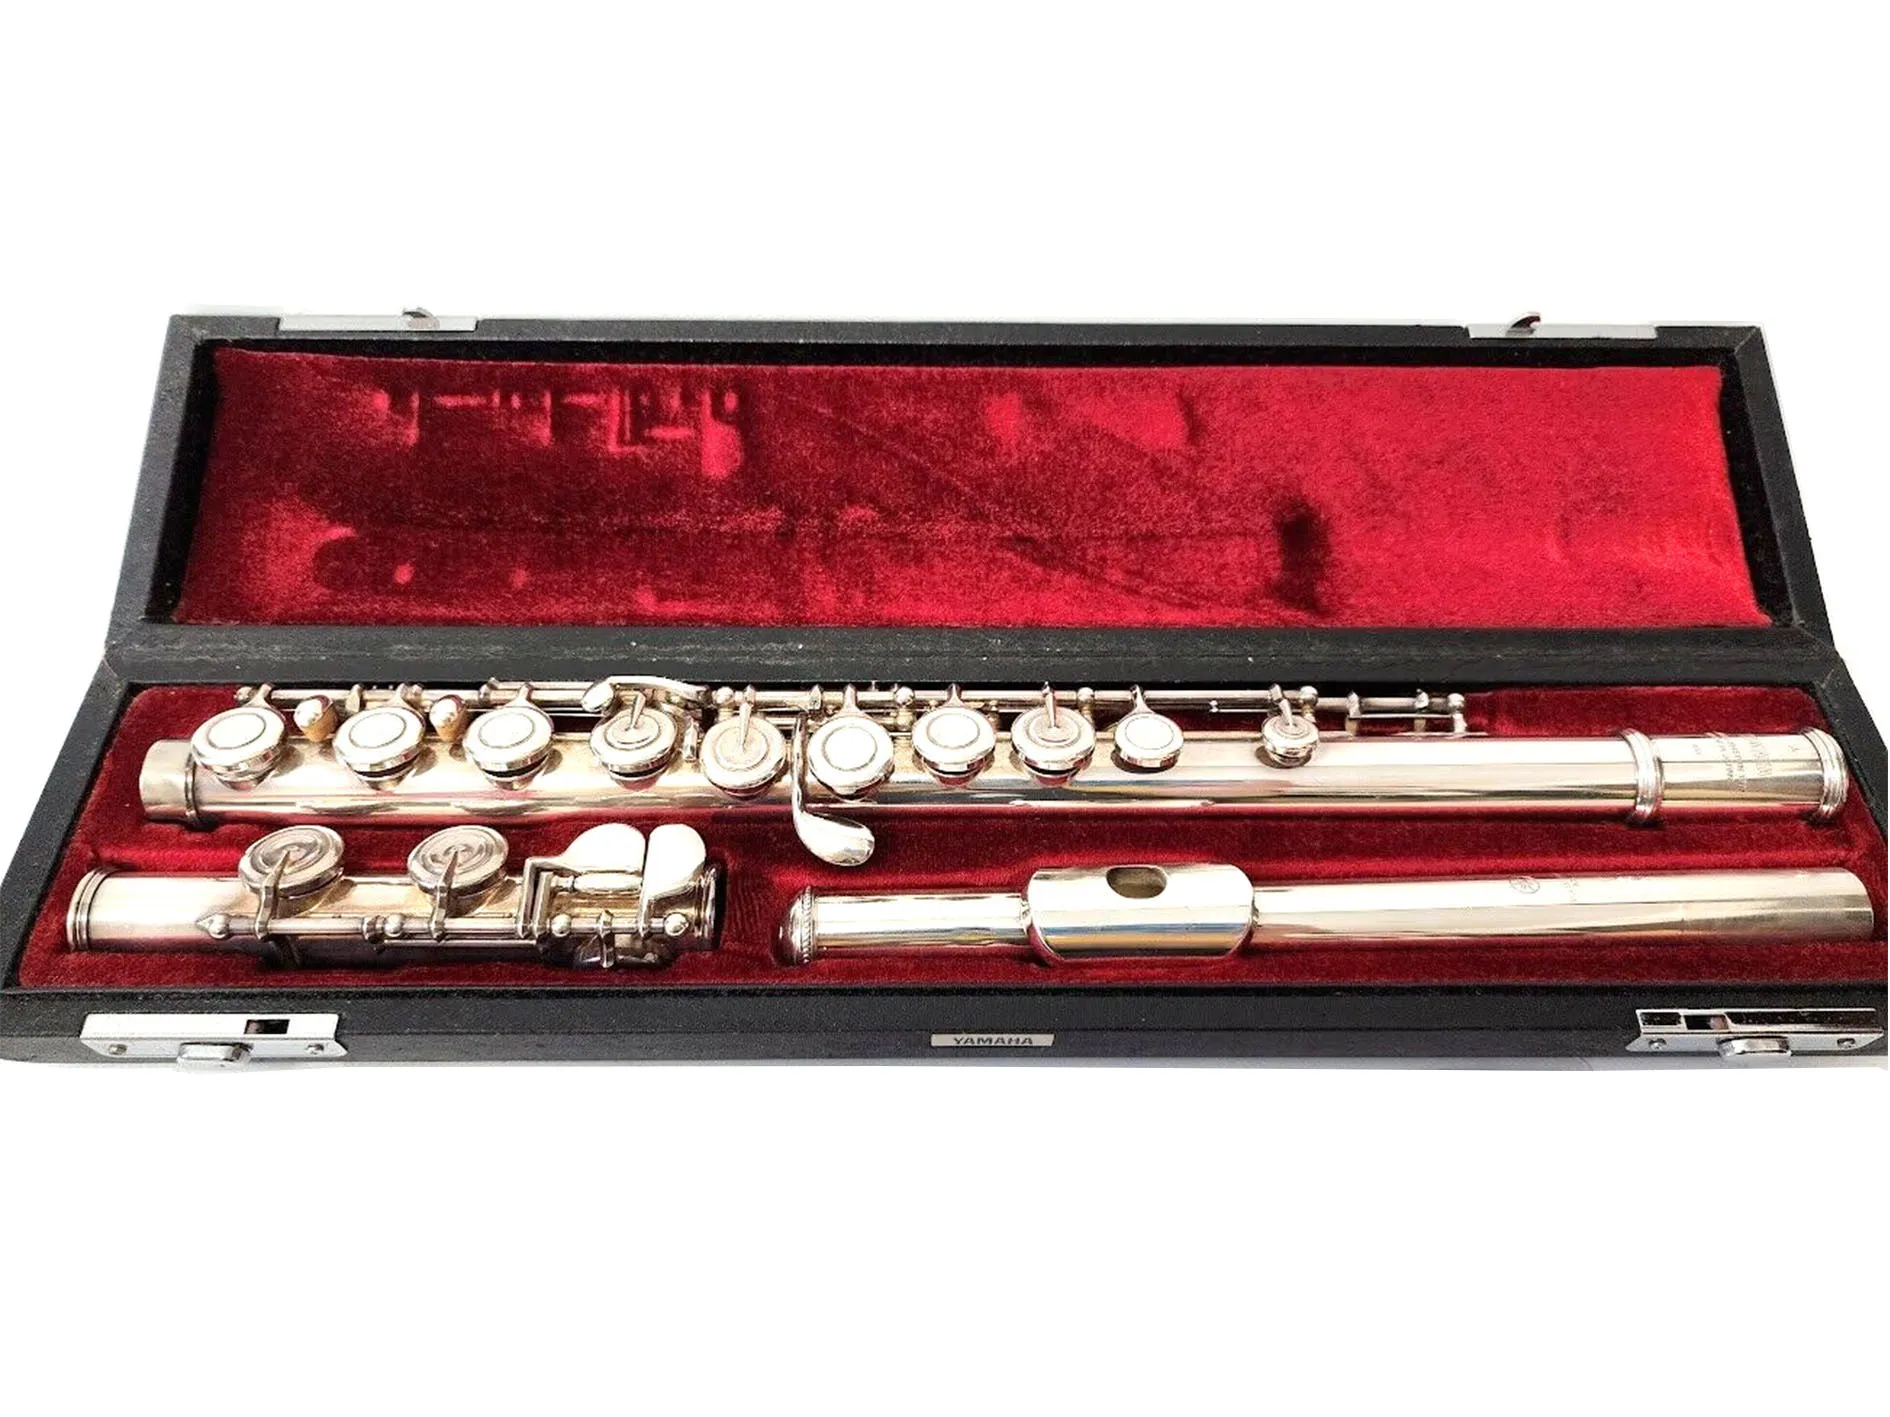 YFL 451 Flute Silver Профессиональная модель Музыкальный инструмент